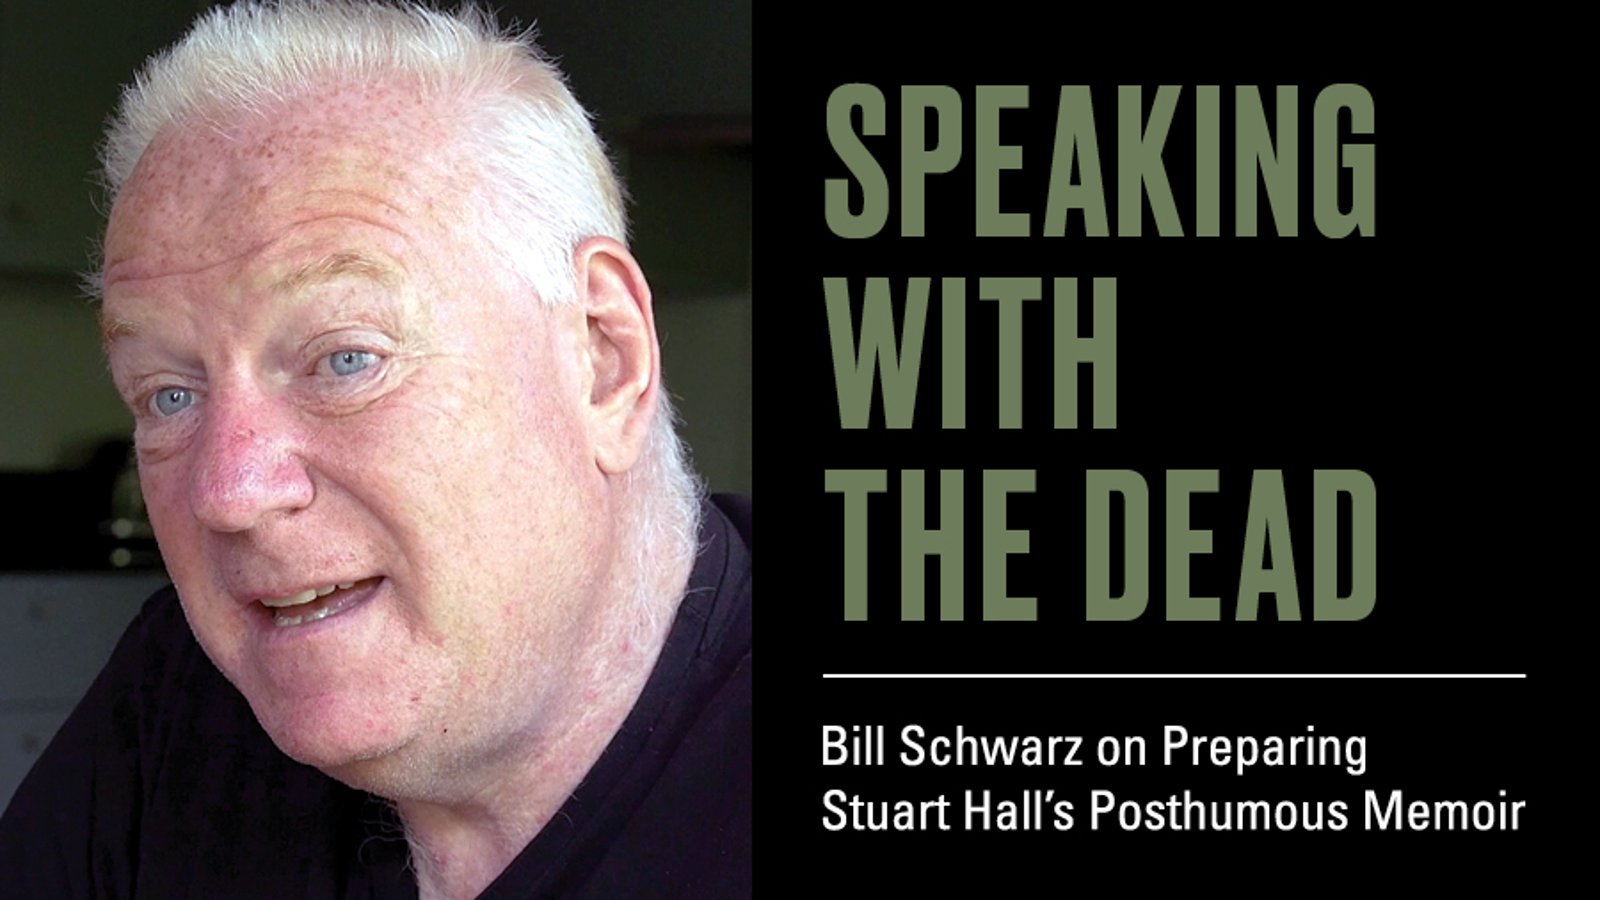 Speaking with the Dead - Bill Schwarz on Preparing Stuart Hall's Posthumous Memoir